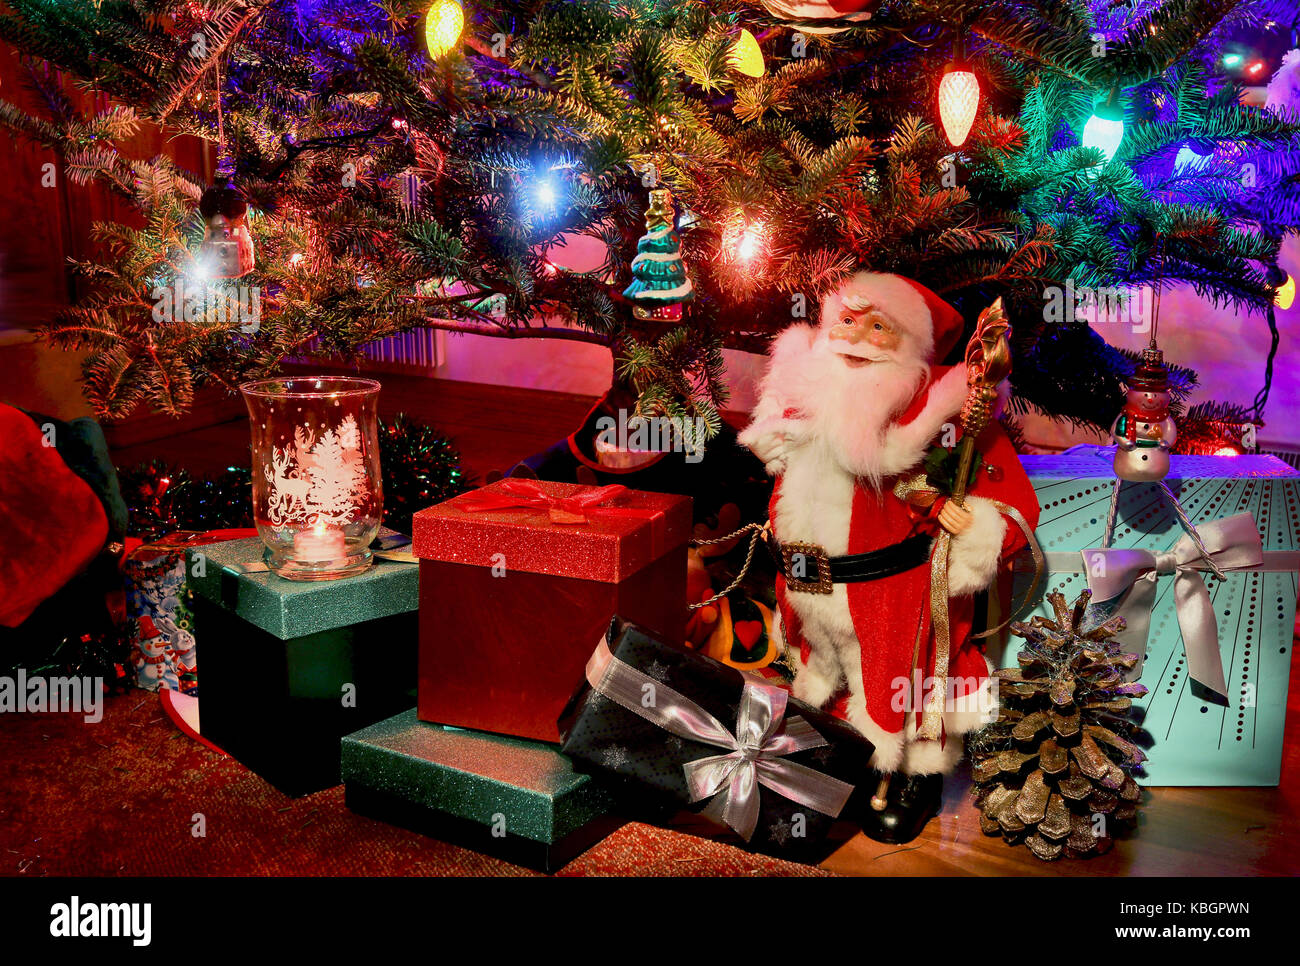 Nachtaufnahme mit leuchtenden Weihnachtsbaum, Weihnachtsmann und Geschenkboxen. Gut für eine saisonale Grußkarten. Stockfoto